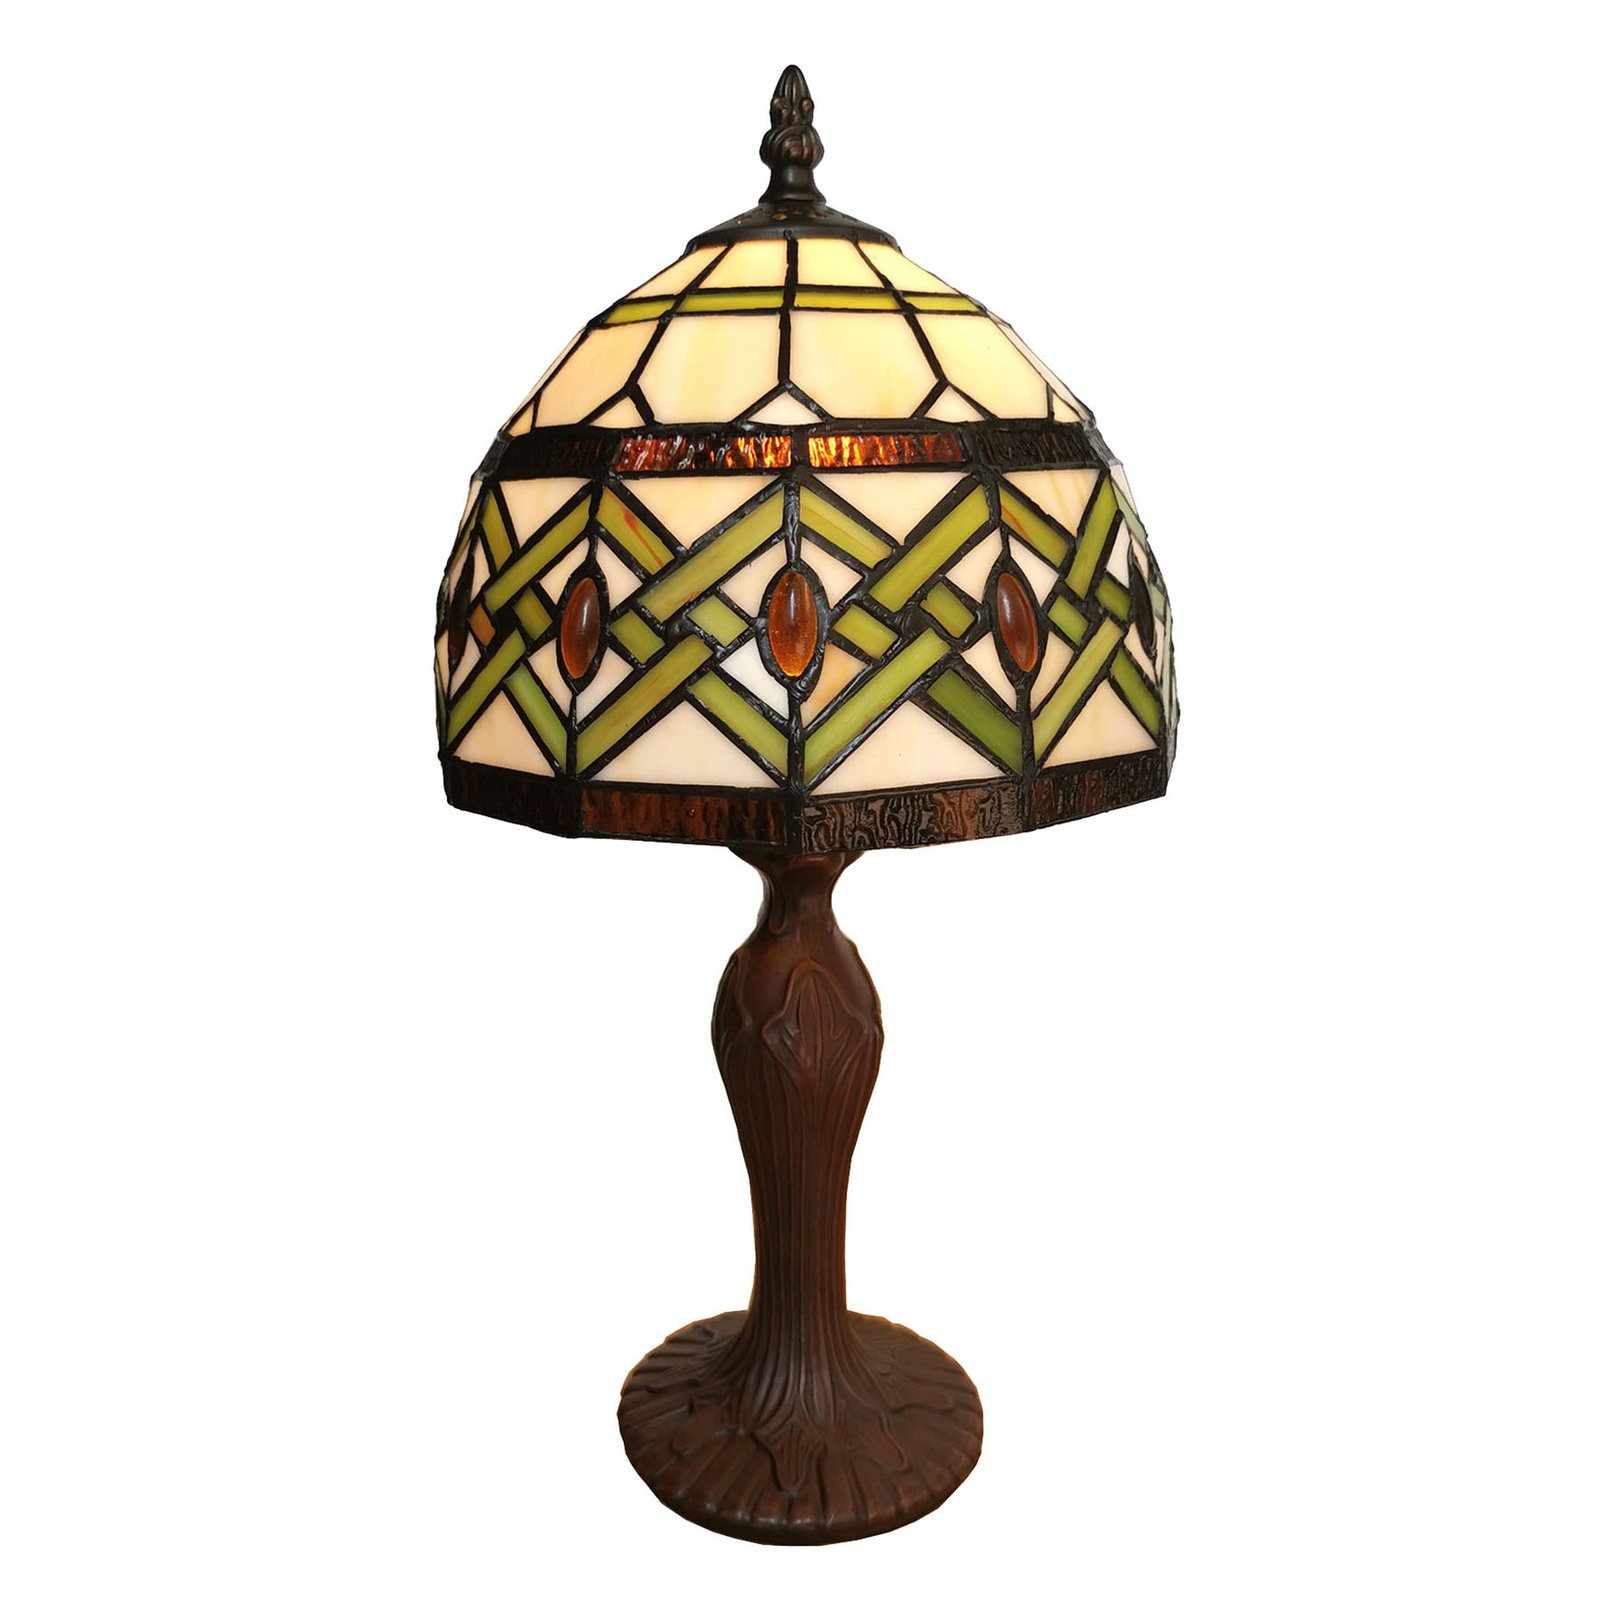 Lumilamp 5LL-5100W Lampe de Bureau avec Abat-Jour en Verre Blanc 27 x 23 x 42 cm E27 Max 1 x 60 W Art Deco Lampe Classique 